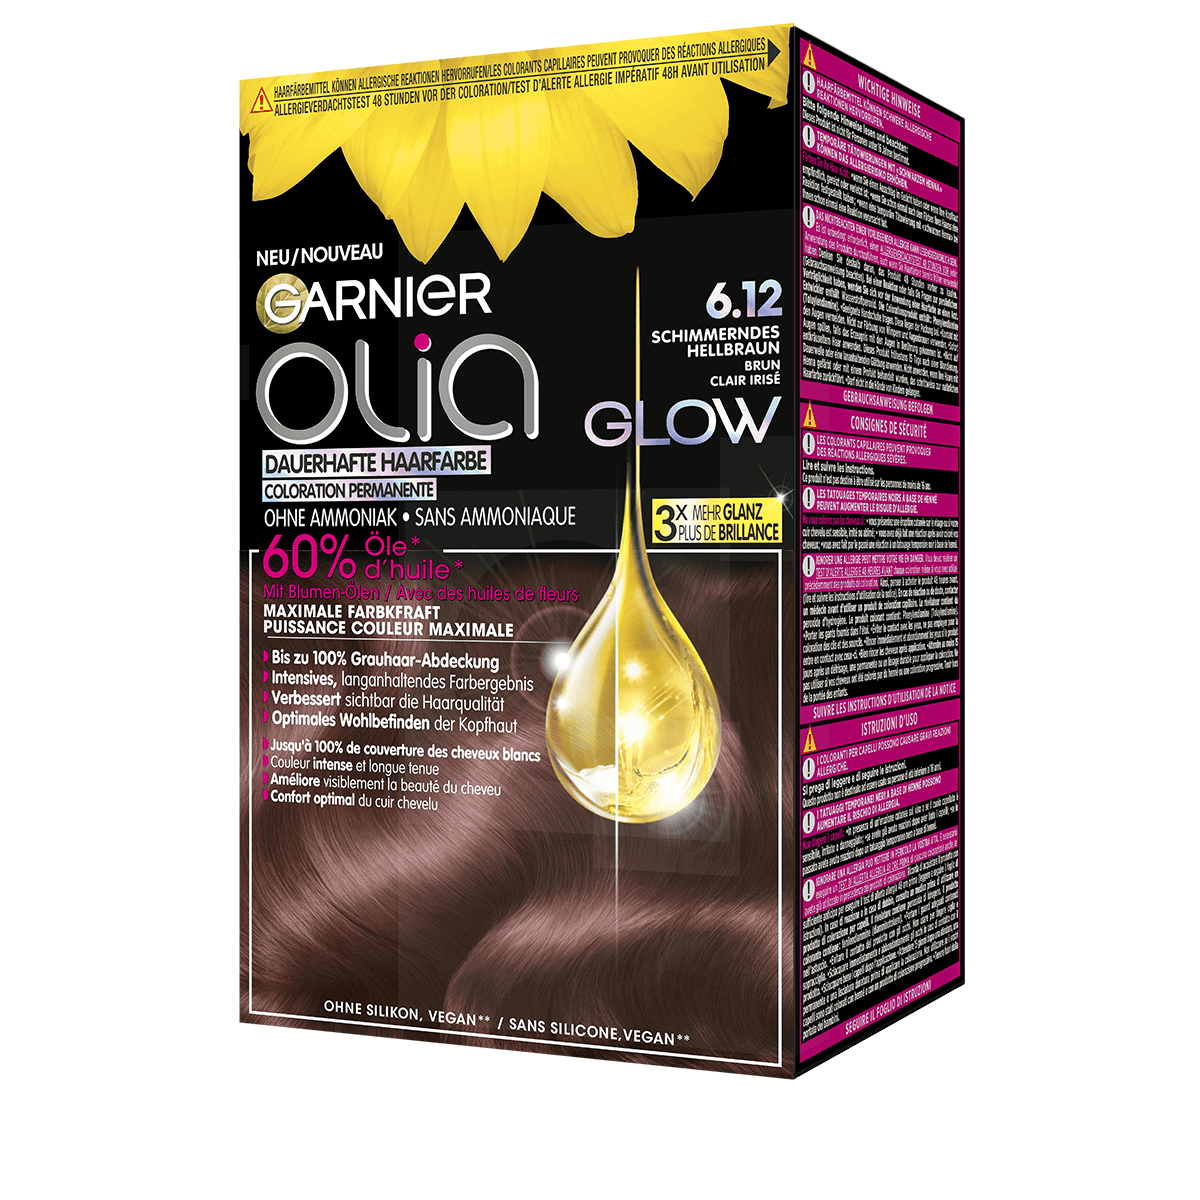 Garnier - Glow Permanent 6.12 hair • colour